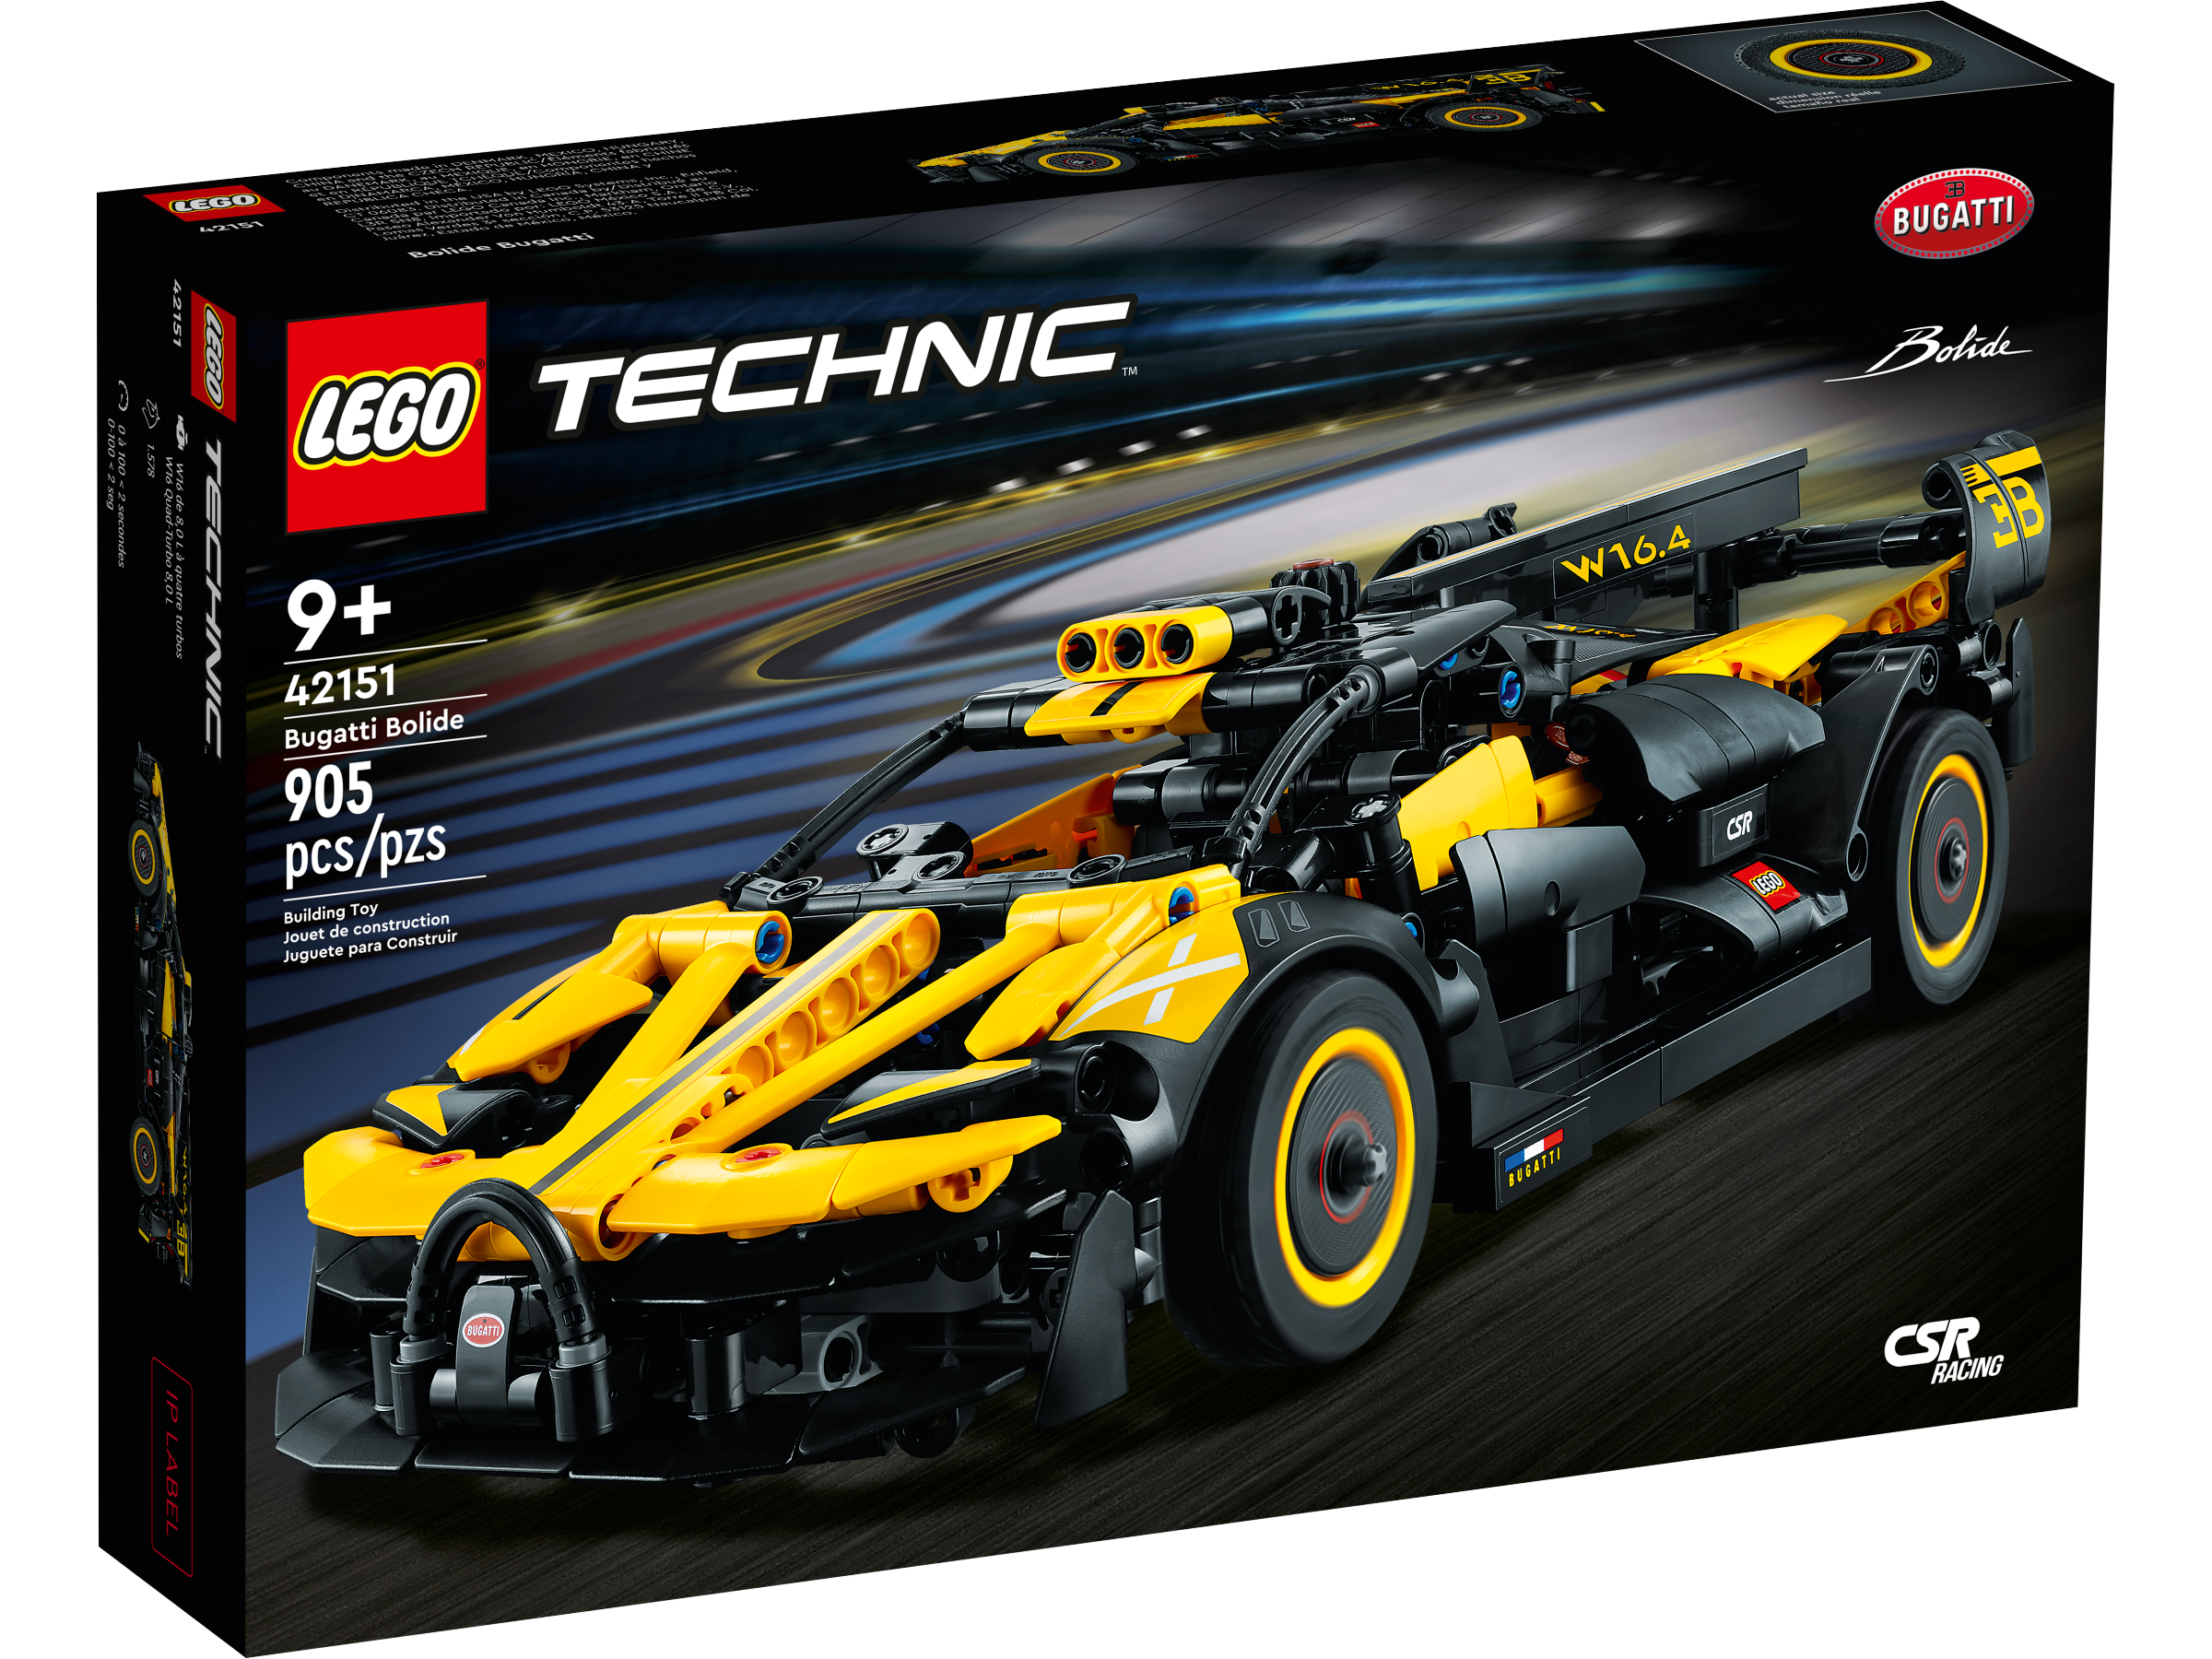 Buitenboordmotor twee weken Persoonlijk LEGO® Technic™ Toys and Collectibles | Official LEGO® Shop US